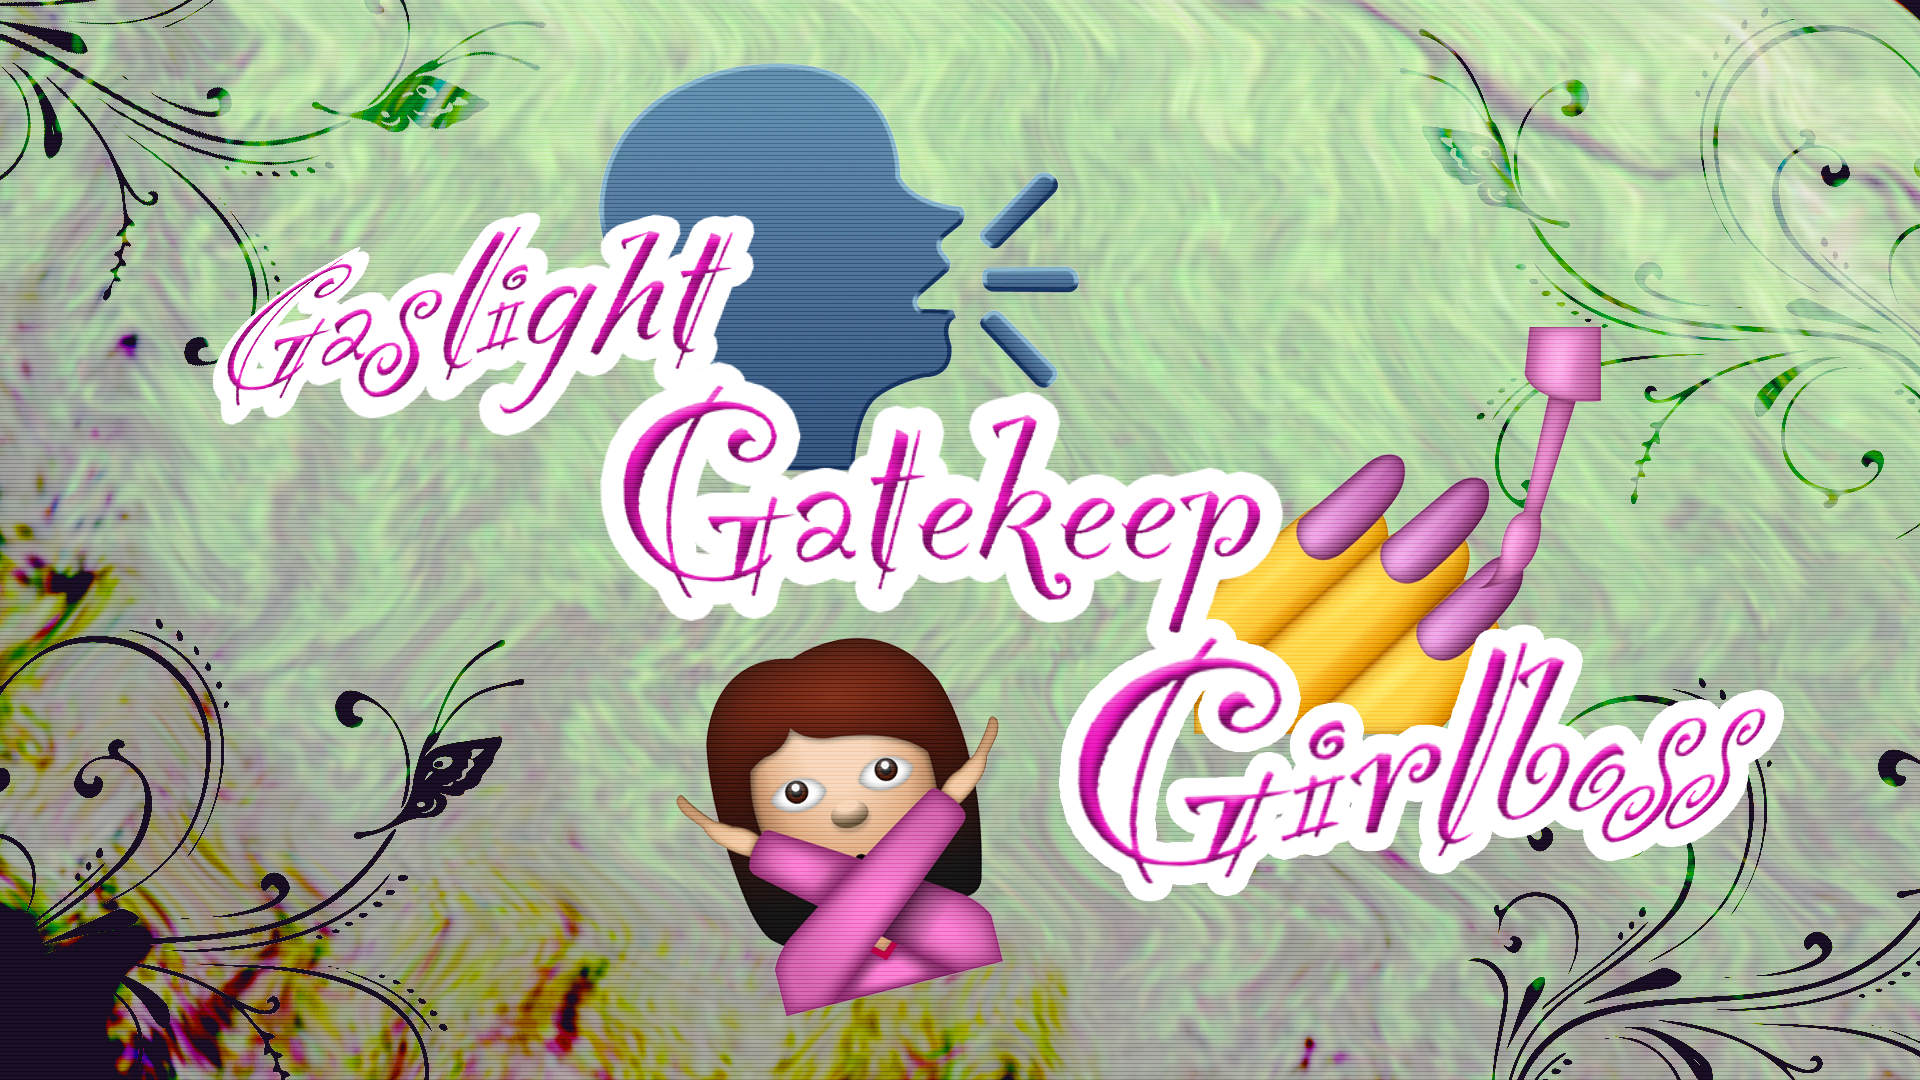 gaslight gatekeep girlboss